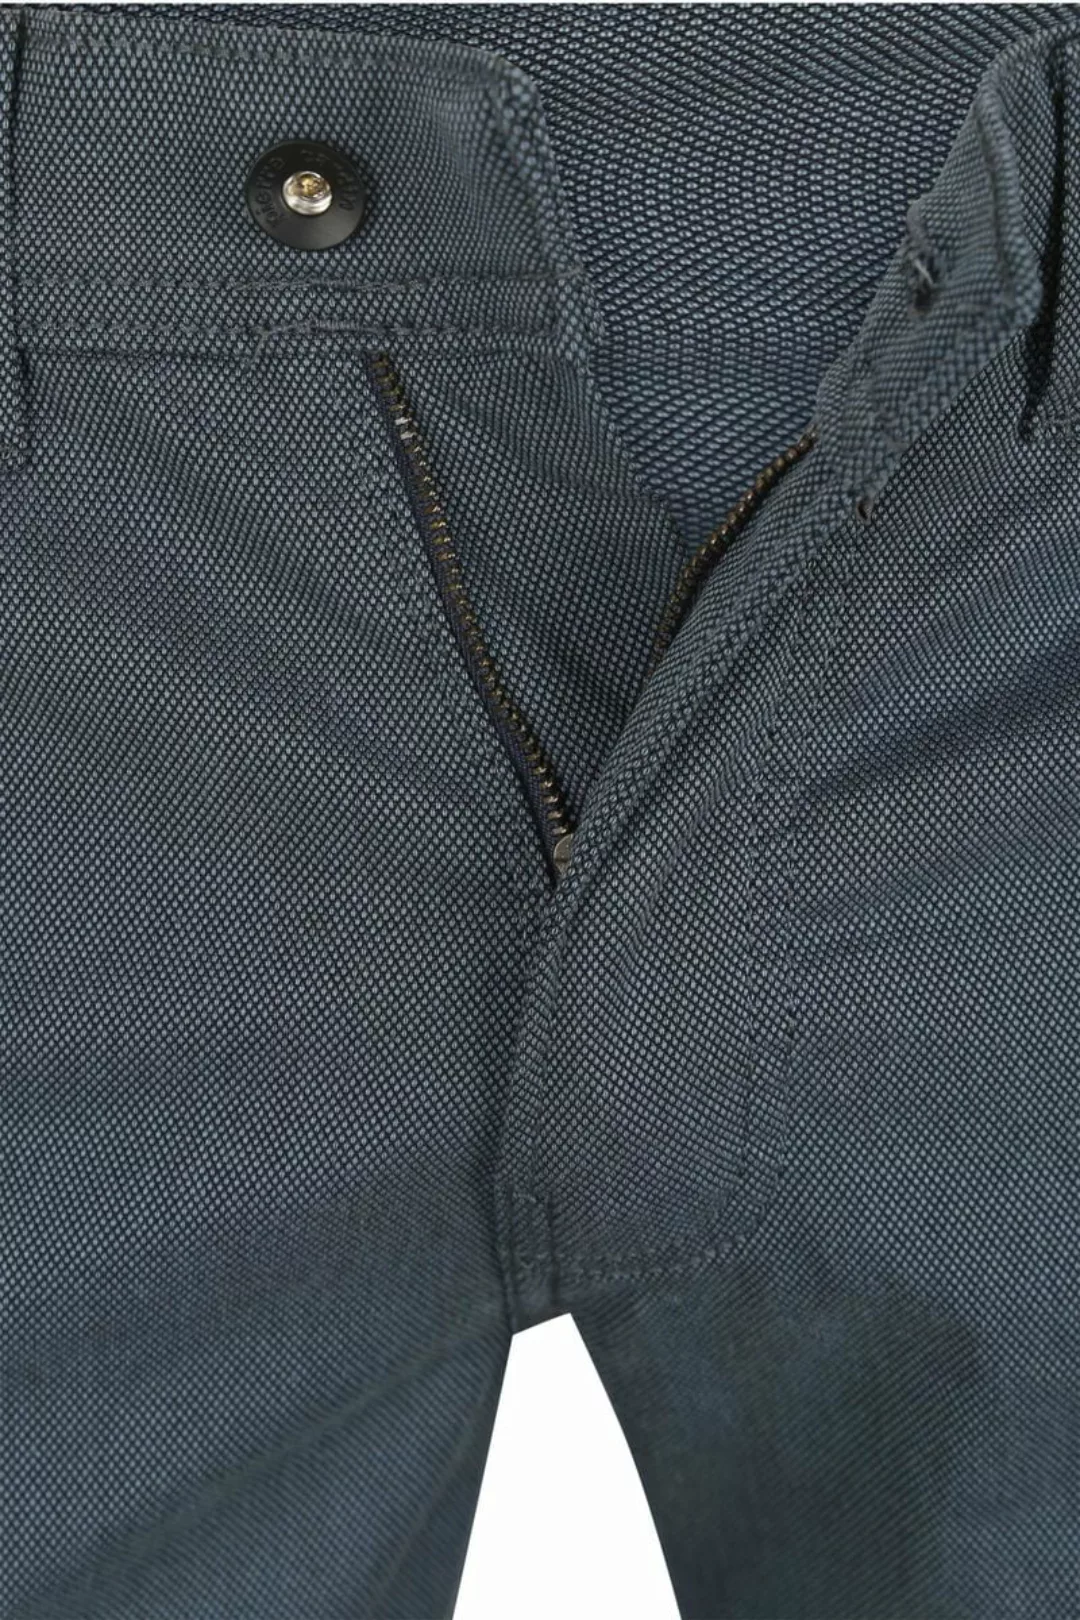 Pierre Cardin Trousers Lyon Tapered Ocean Blau - Größe W 33 - L 30 günstig online kaufen